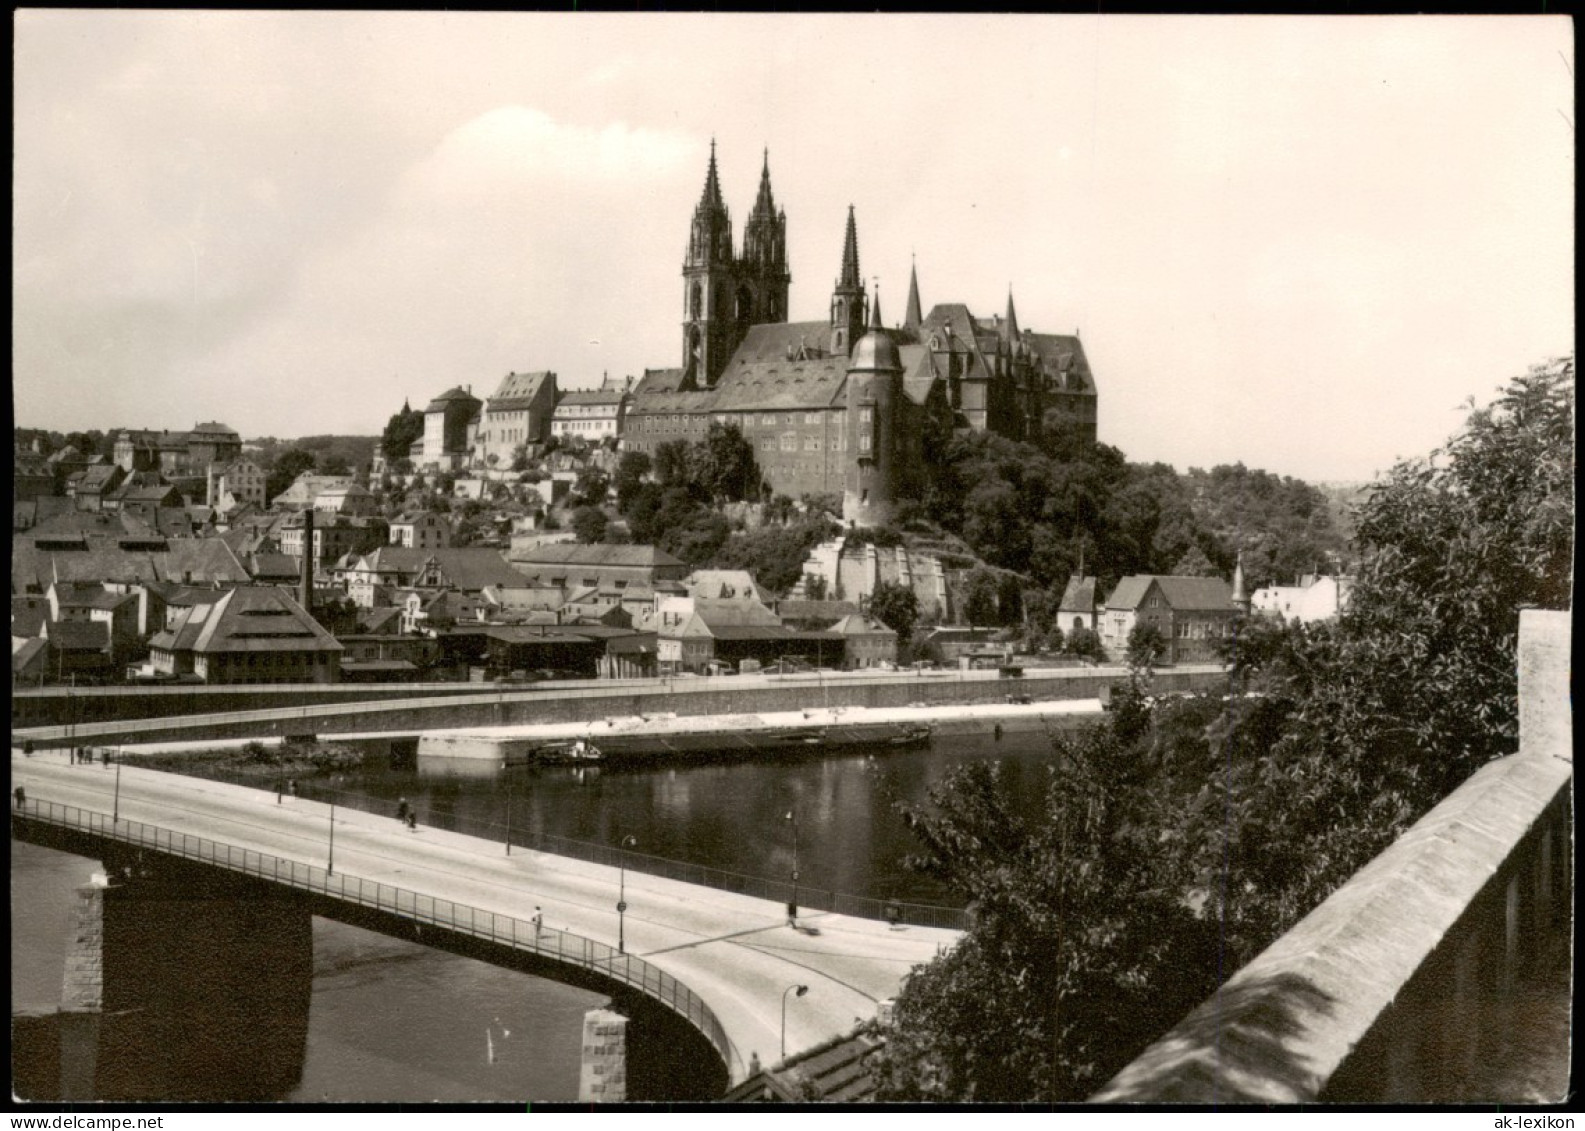 Ansichtskarte Meißen Schloss Albrechtsburg Und Elbe Brücke 1970 - Meissen